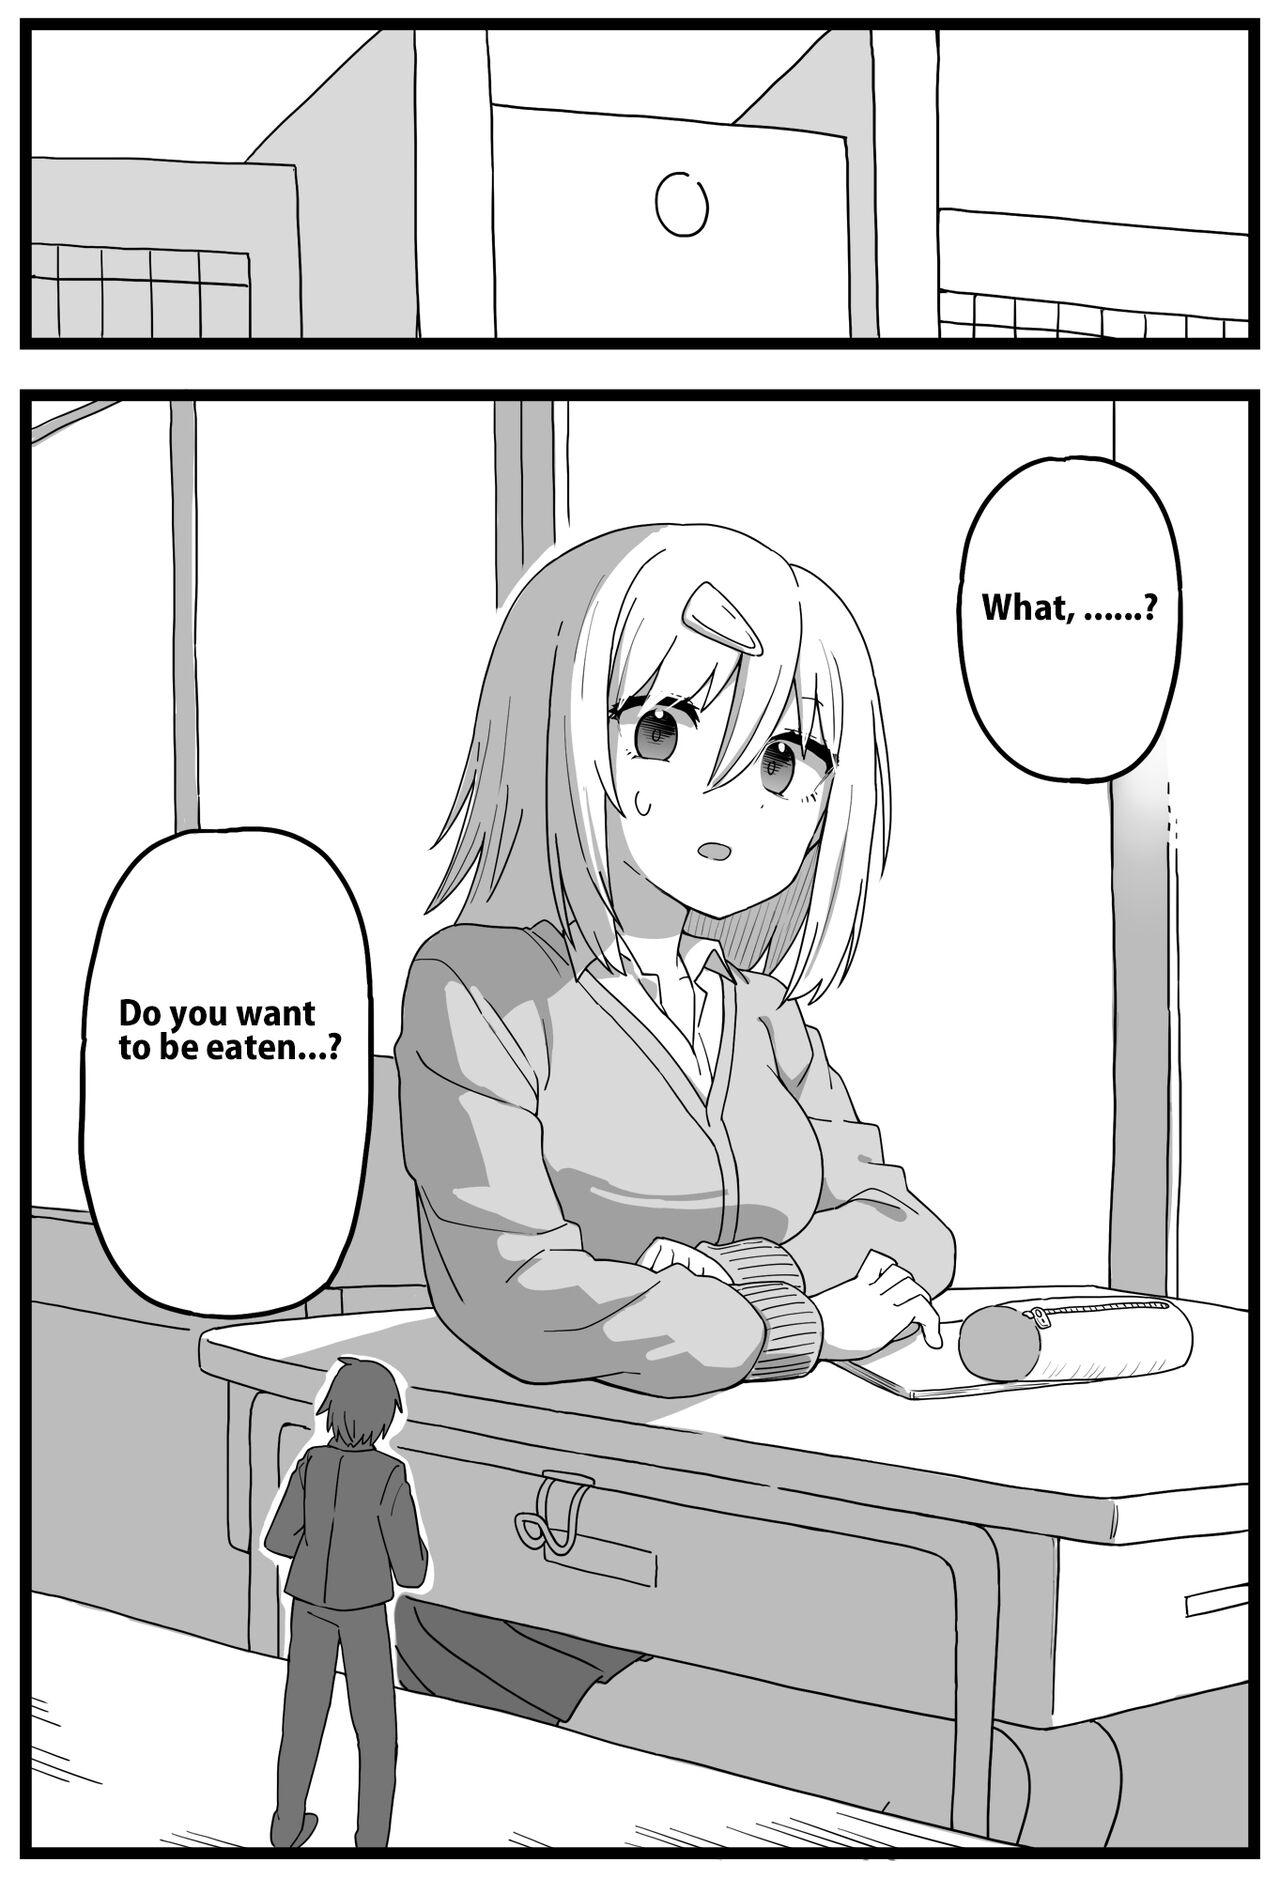 Doushitemo Onnanoko ni Taberaretai Manga | Manga - He really wants to be eaten by a girl 0